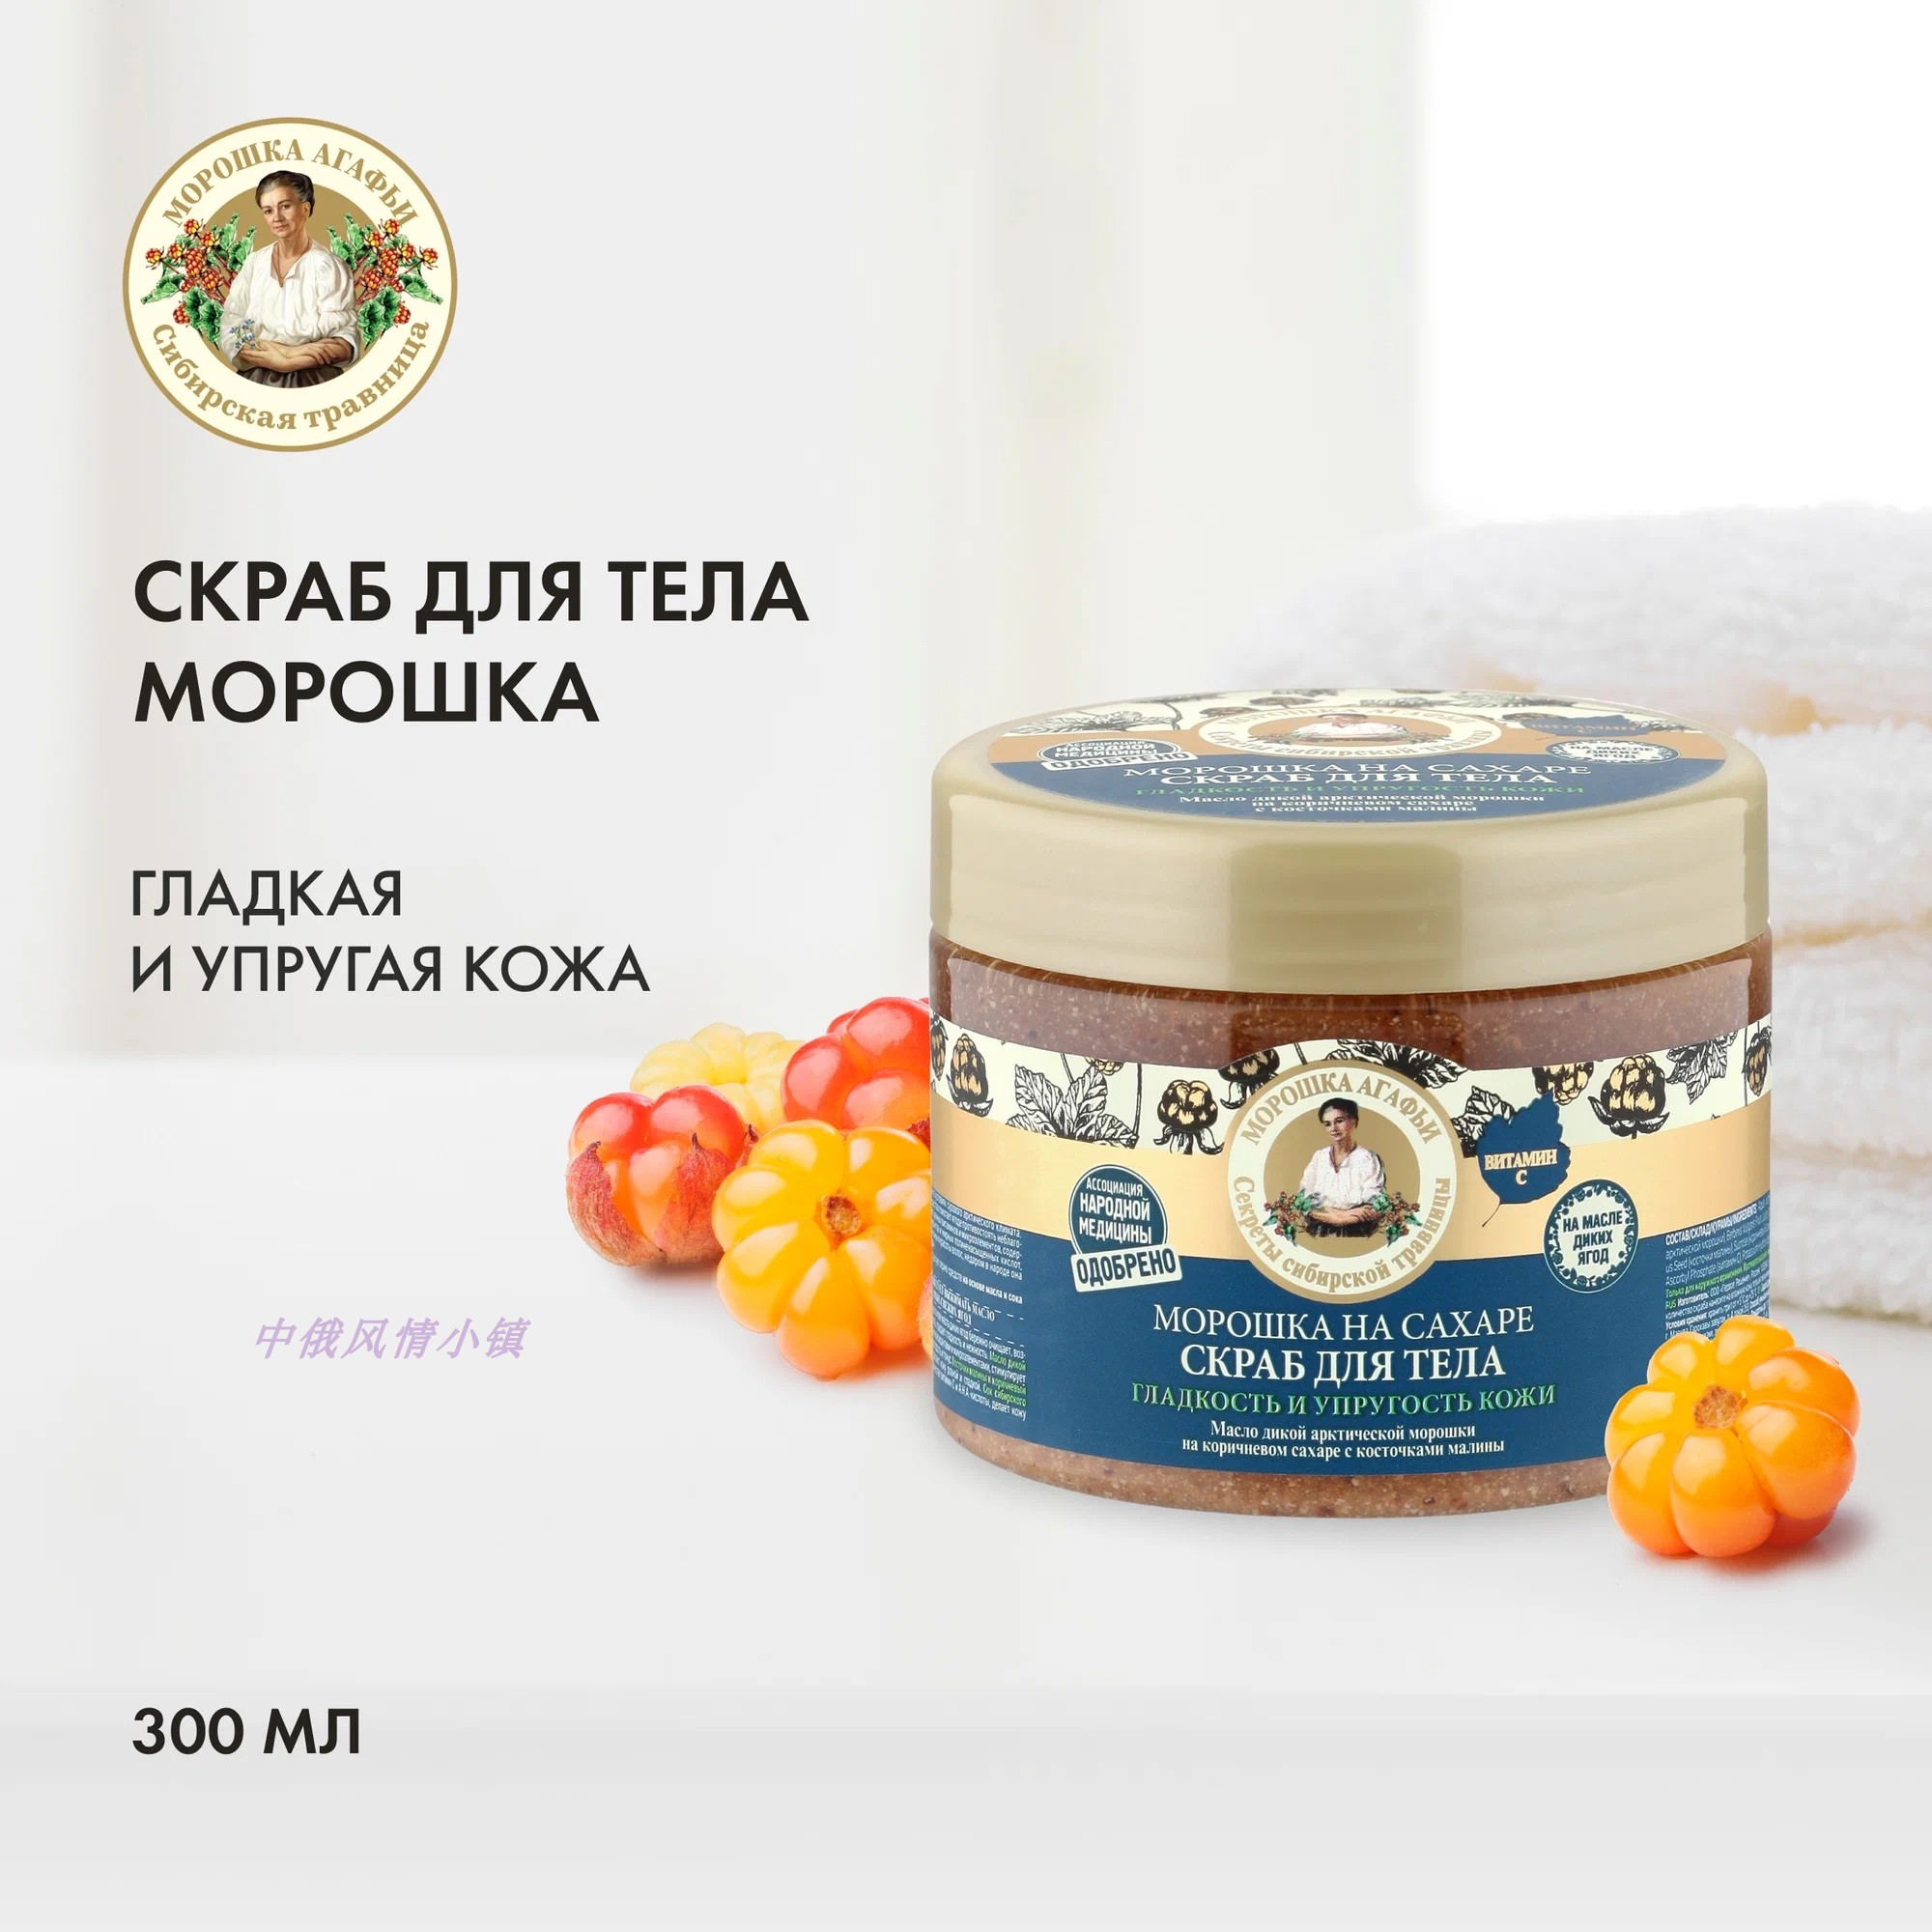 俄罗斯婀卡菲娅老奶奶芸莓果磨砂膏深层清洁去角质滋养肌肤300ML